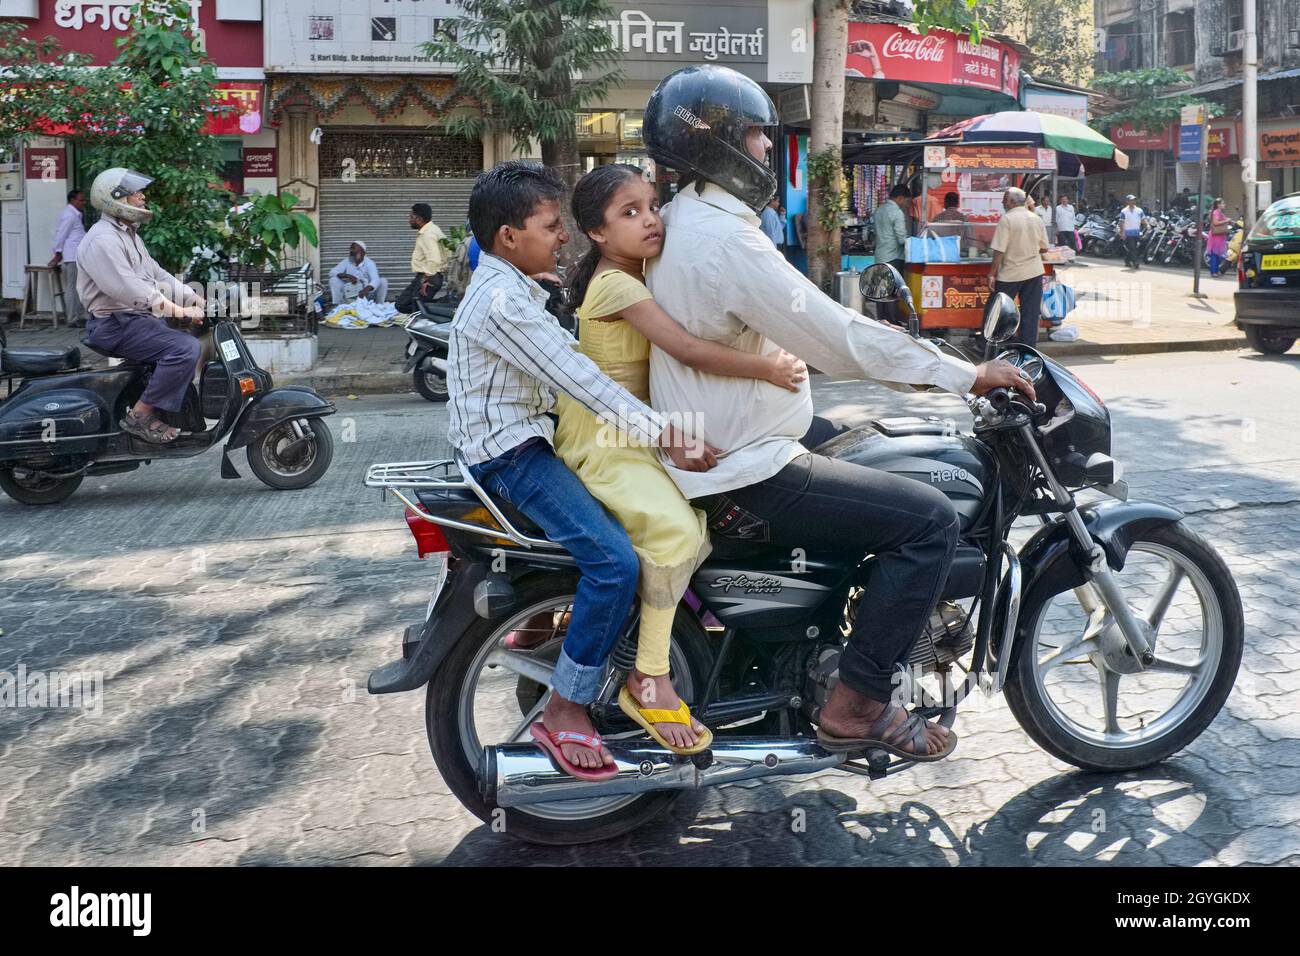 Ein Vater, der mit seiner jungen Tochter und seinem Sohn auf dem Motorrad unterwegs ist und sich an ihm festhält, fährt auf einem Sozius, Mumbai (Bombay), Indien Stockfoto